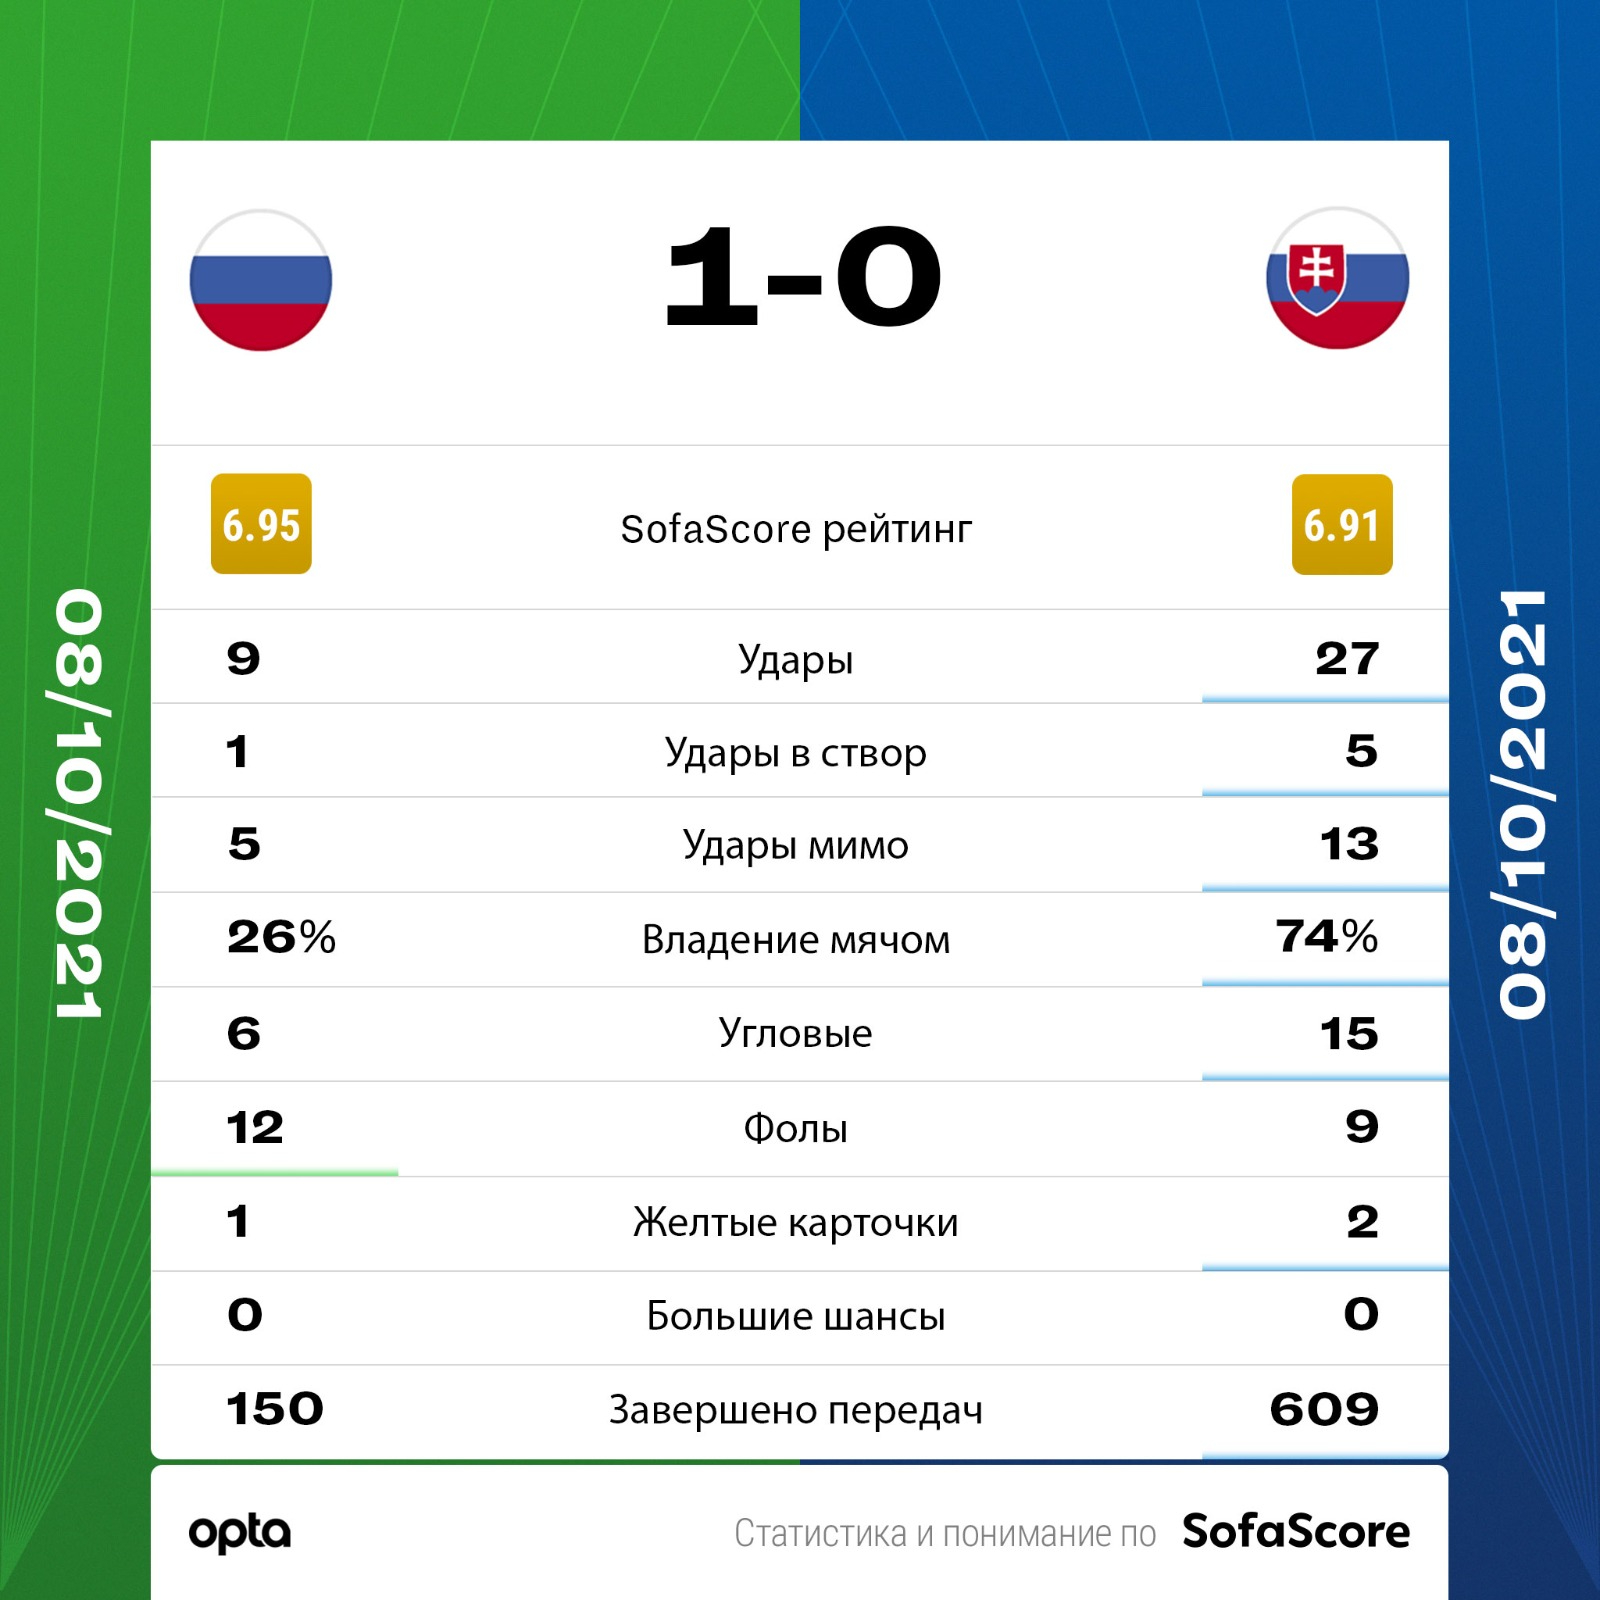 Автогол словаков принес России победу в матче отбора ЧМ-2022